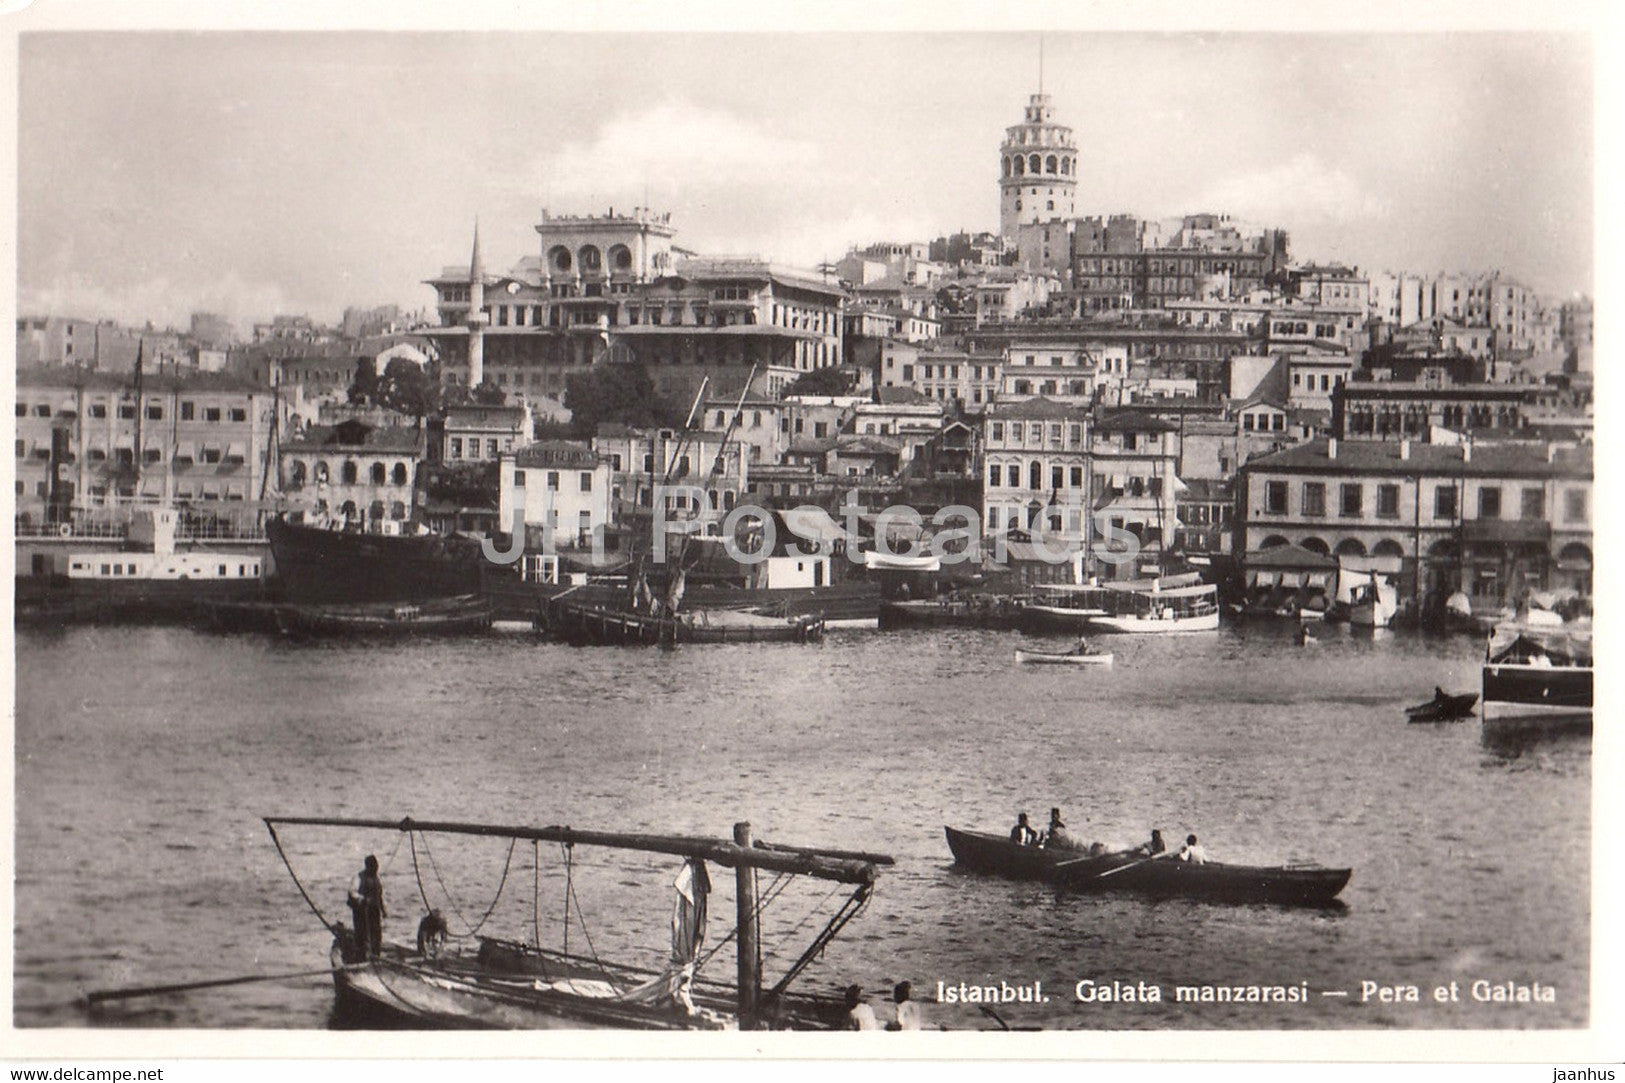 Istanbul - Pera et Galata - boat - old postcard - Turkey - unused - JH Postcards